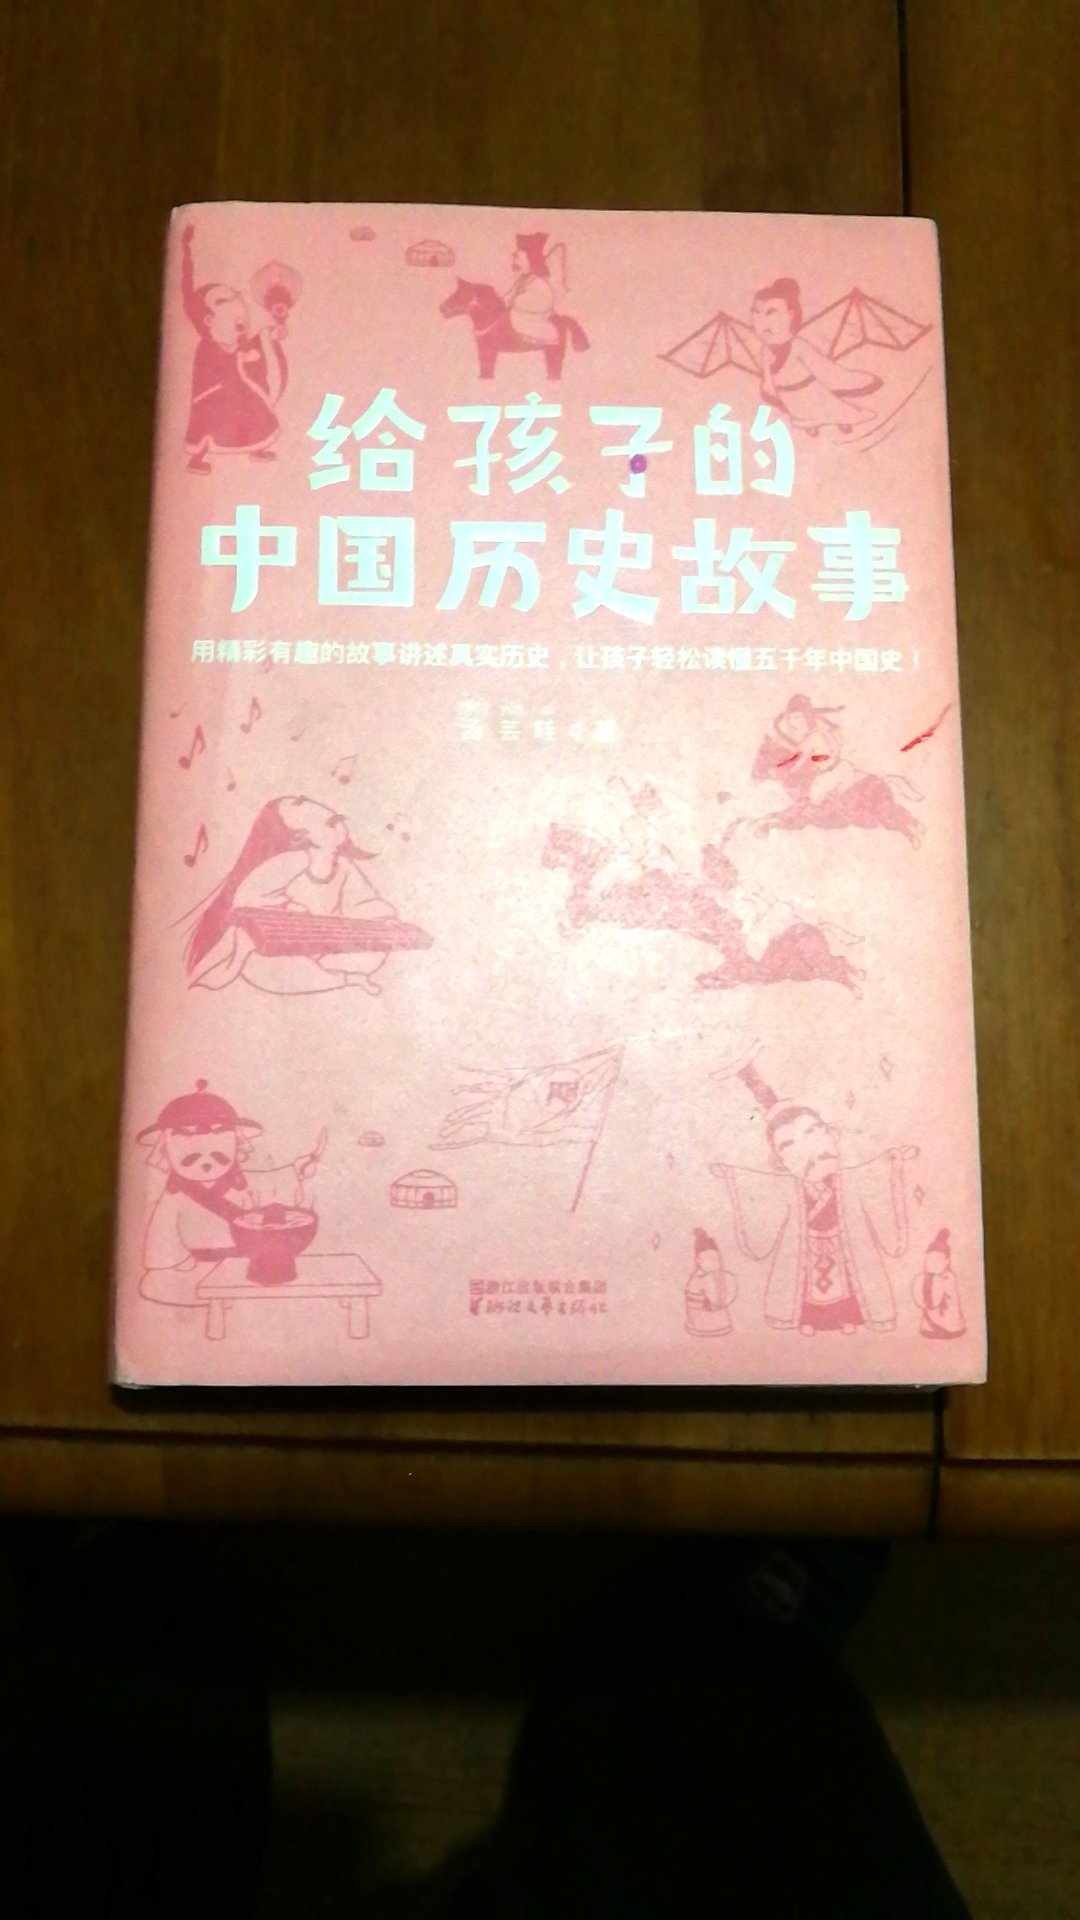 用精彩有趣的故事讲述真实历史，让孩子轻松读懂五千年中国史。